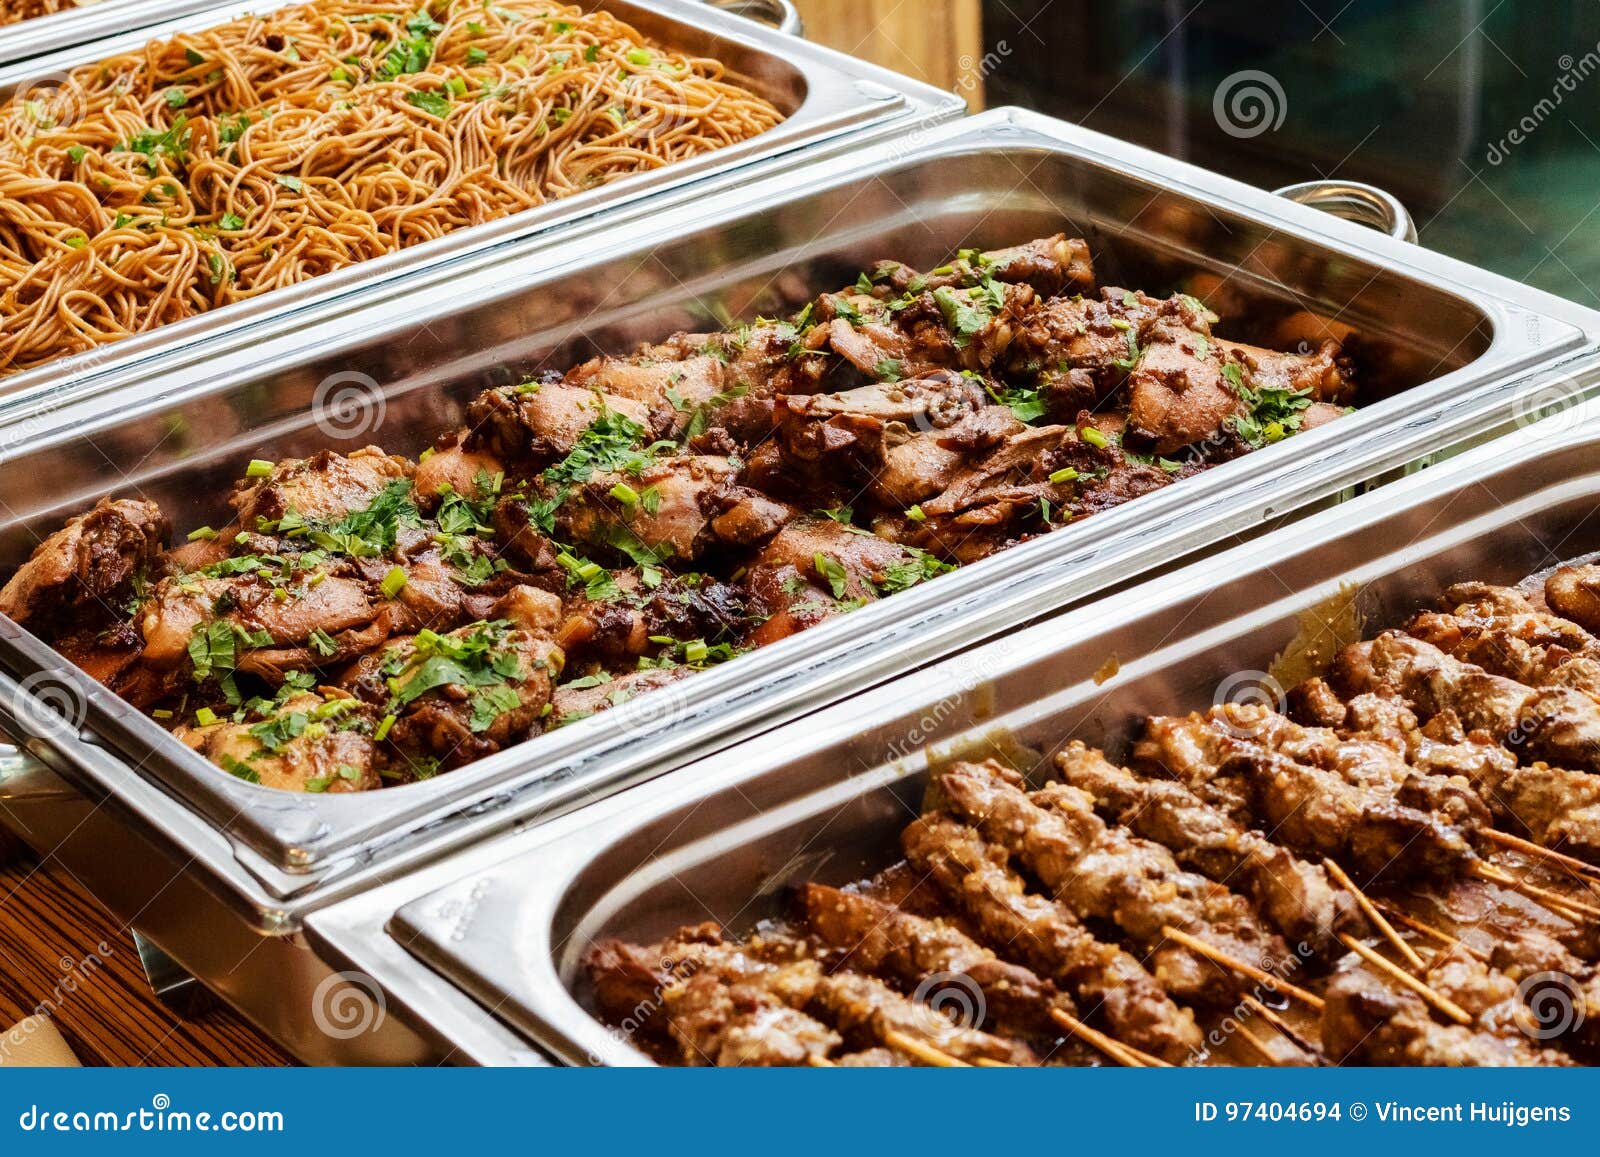 Plat asiatique de approvisionnement de nourriture de buffet avec de la viande. Plat oriental asiatique de approvisionnement de nourriture de buffet avec de la viande et les légumes colorés sur un Tableau